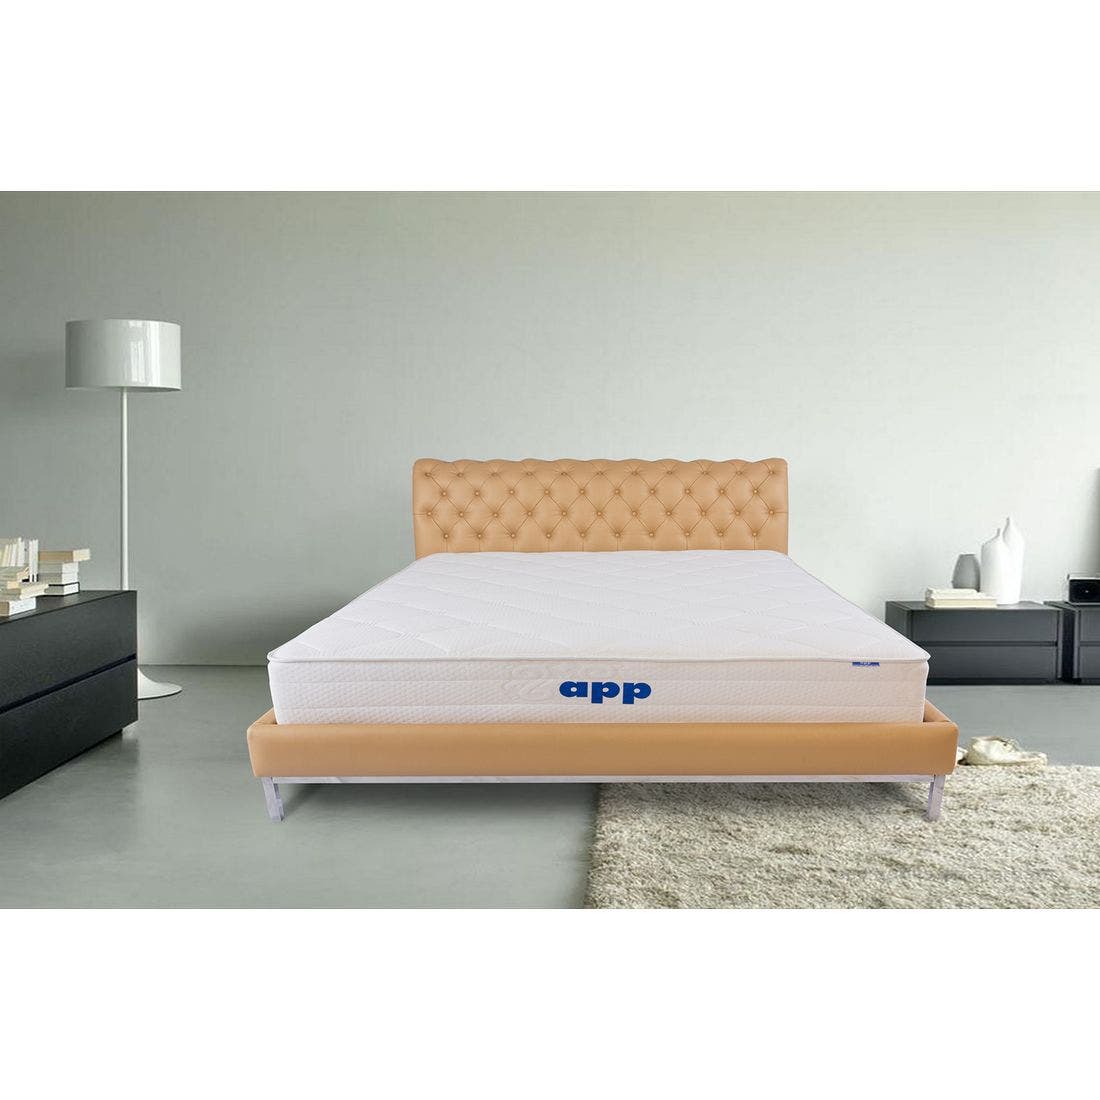 39015073-mattress-bedding-mattresses-pocket-spring-mattress-31